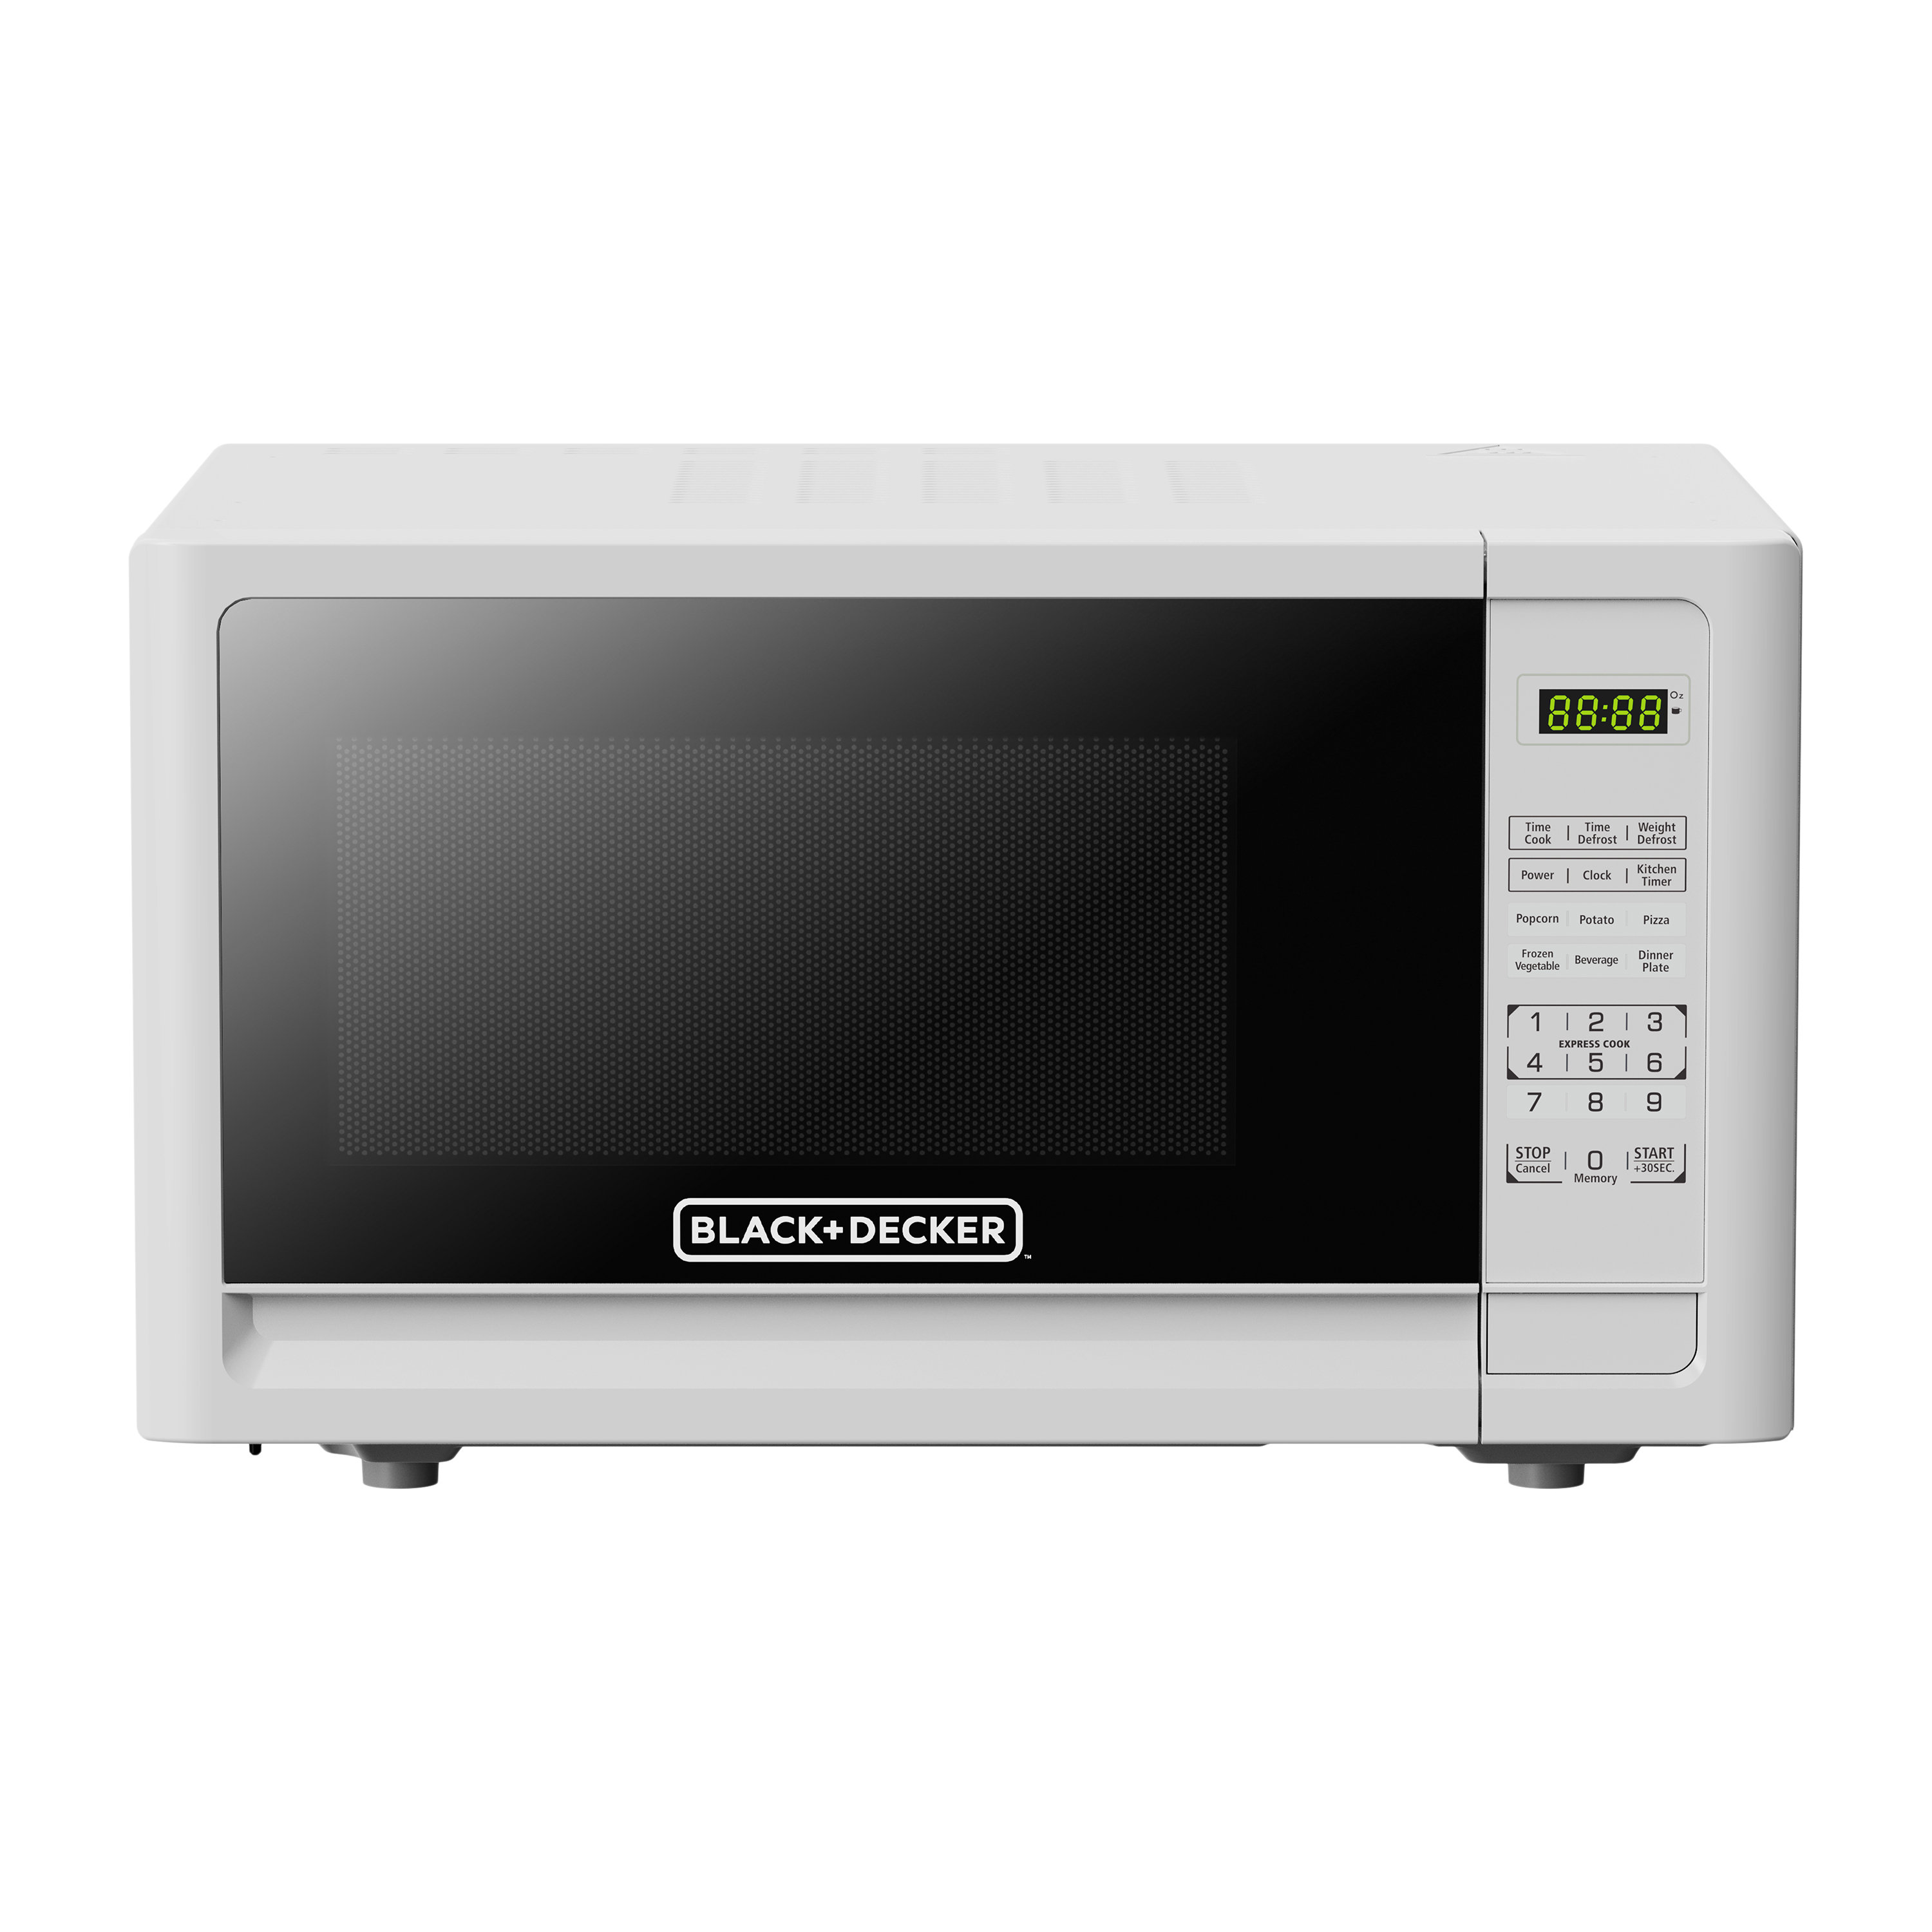 https://assets.wfcdn.com/im/70622936/compr-r85/2487/248721349/blackdecker-11-cubic-feet-countertop-microwave.jpg